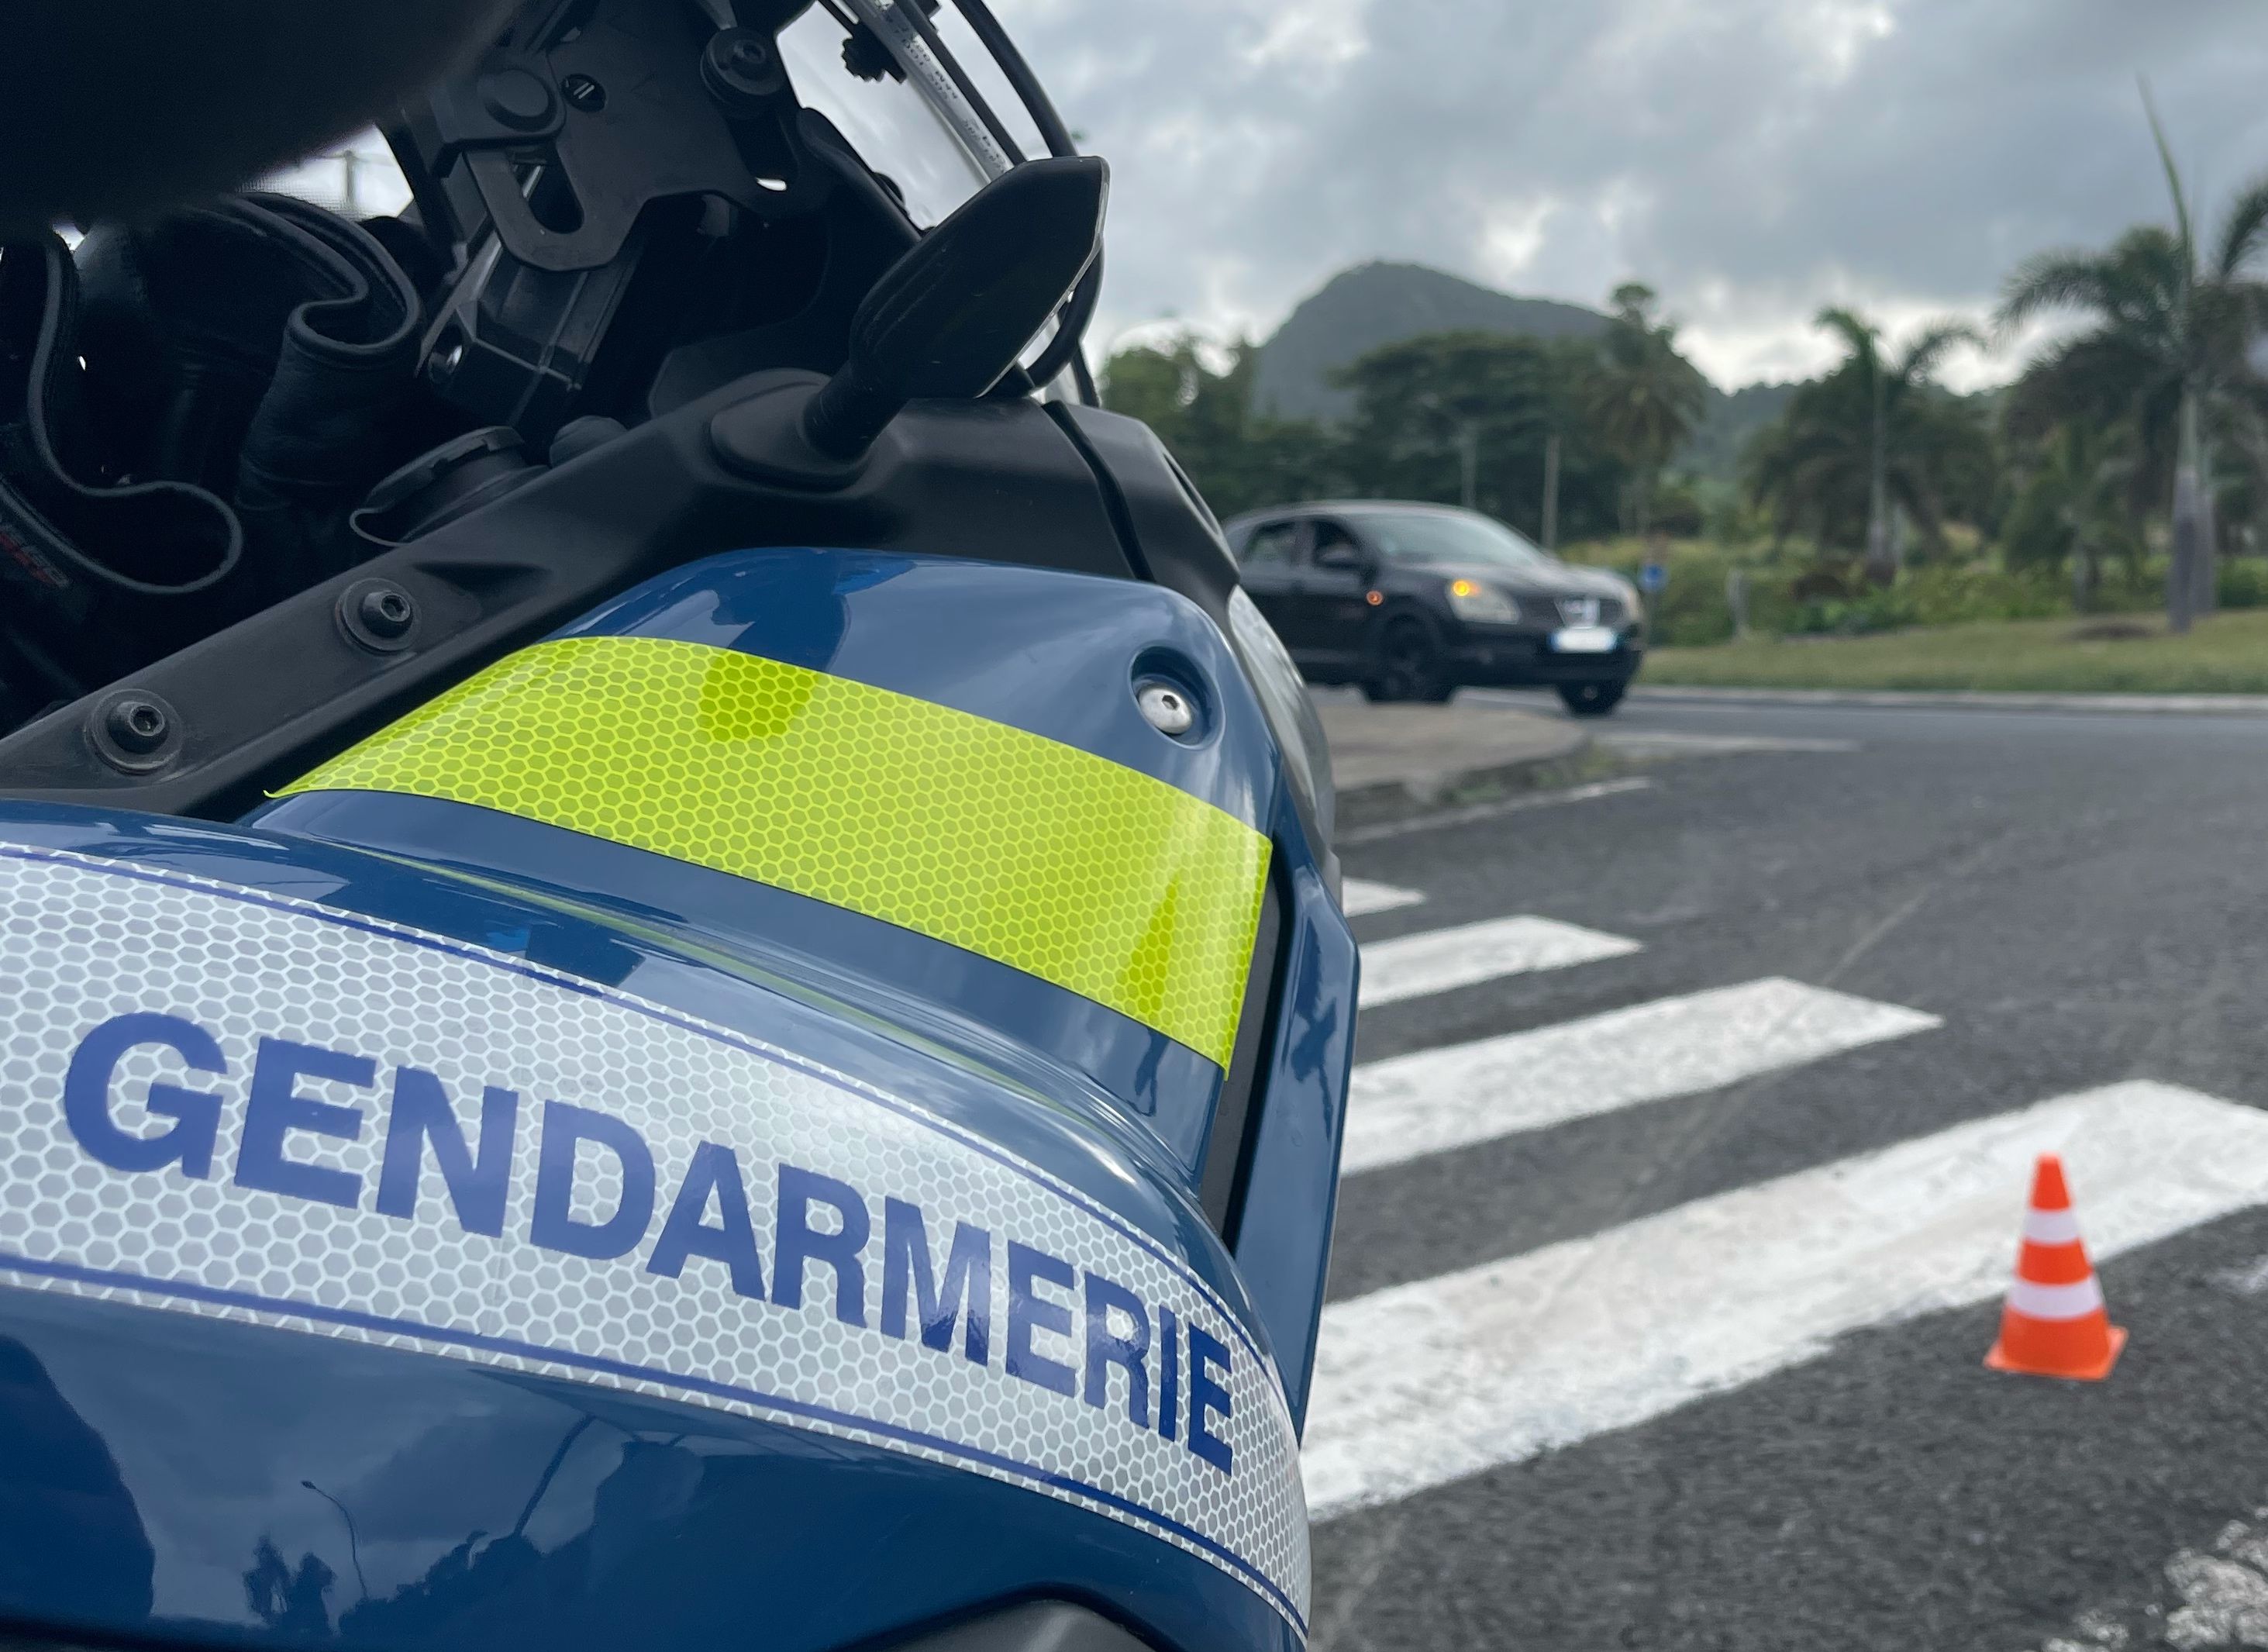     94 infractions routières relevées par les gendarmes en Guadeloupe ce week-end

